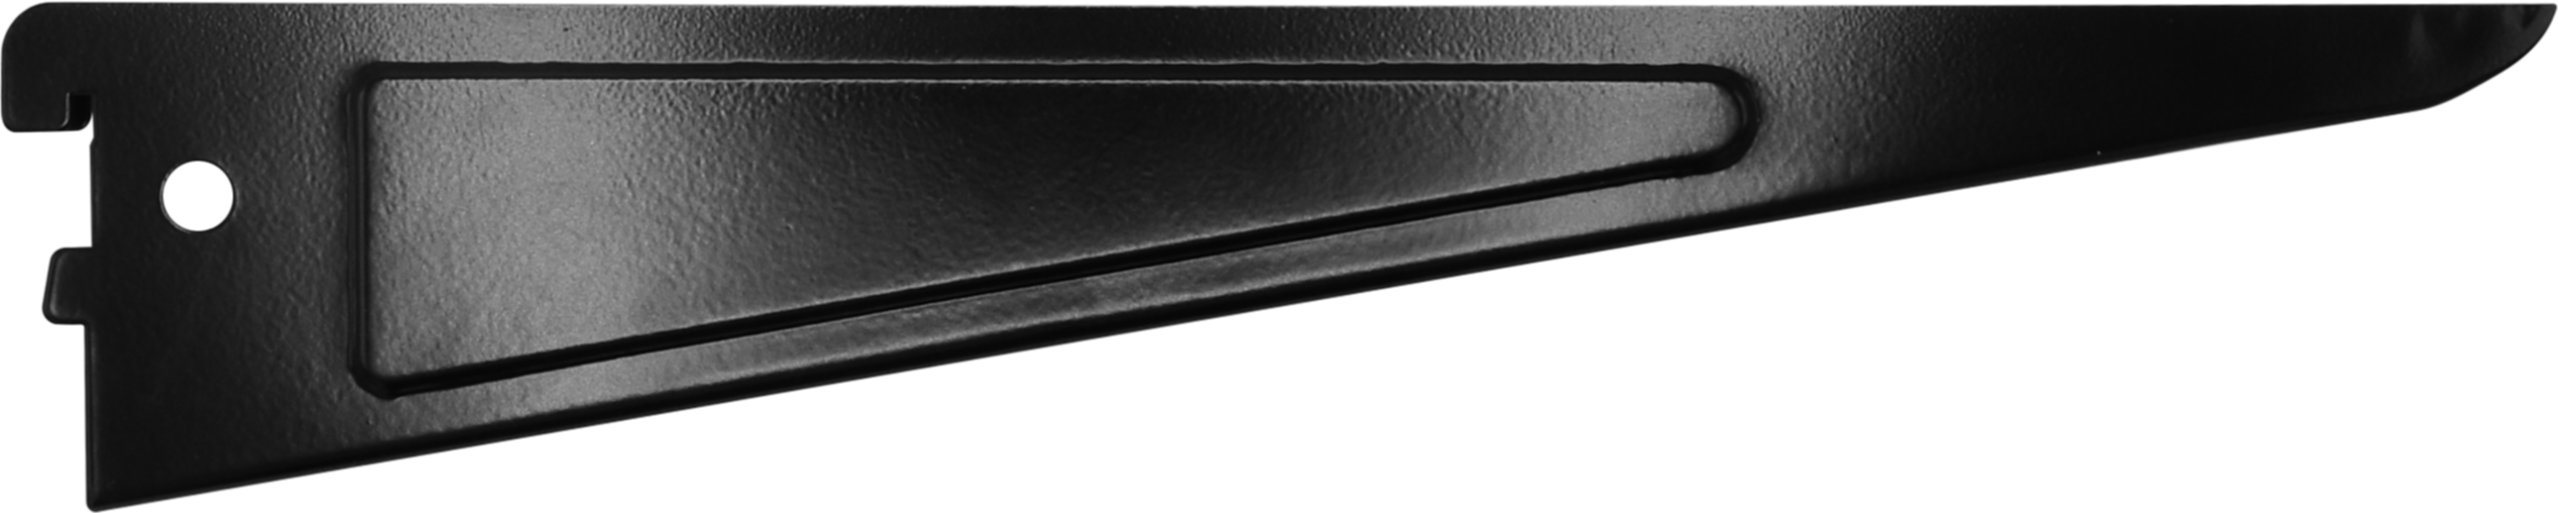 Console double acier noir 32 cm entraxe 32 mm - CIME